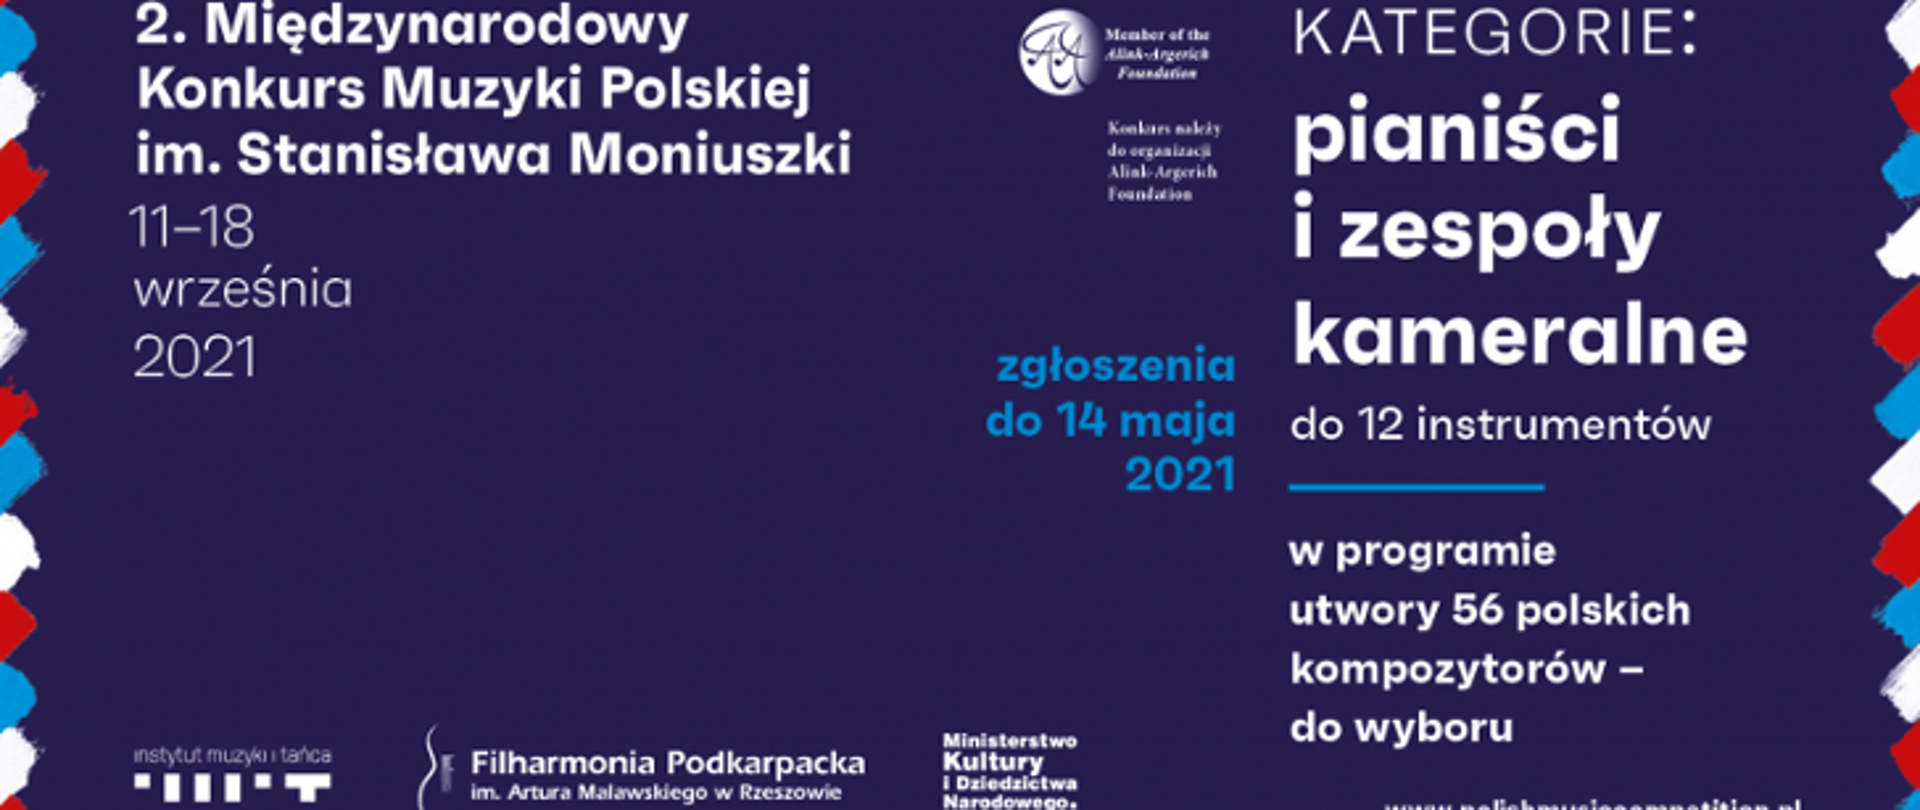 2 Międzynarodowy Konkurs Muzyki Polskiej 